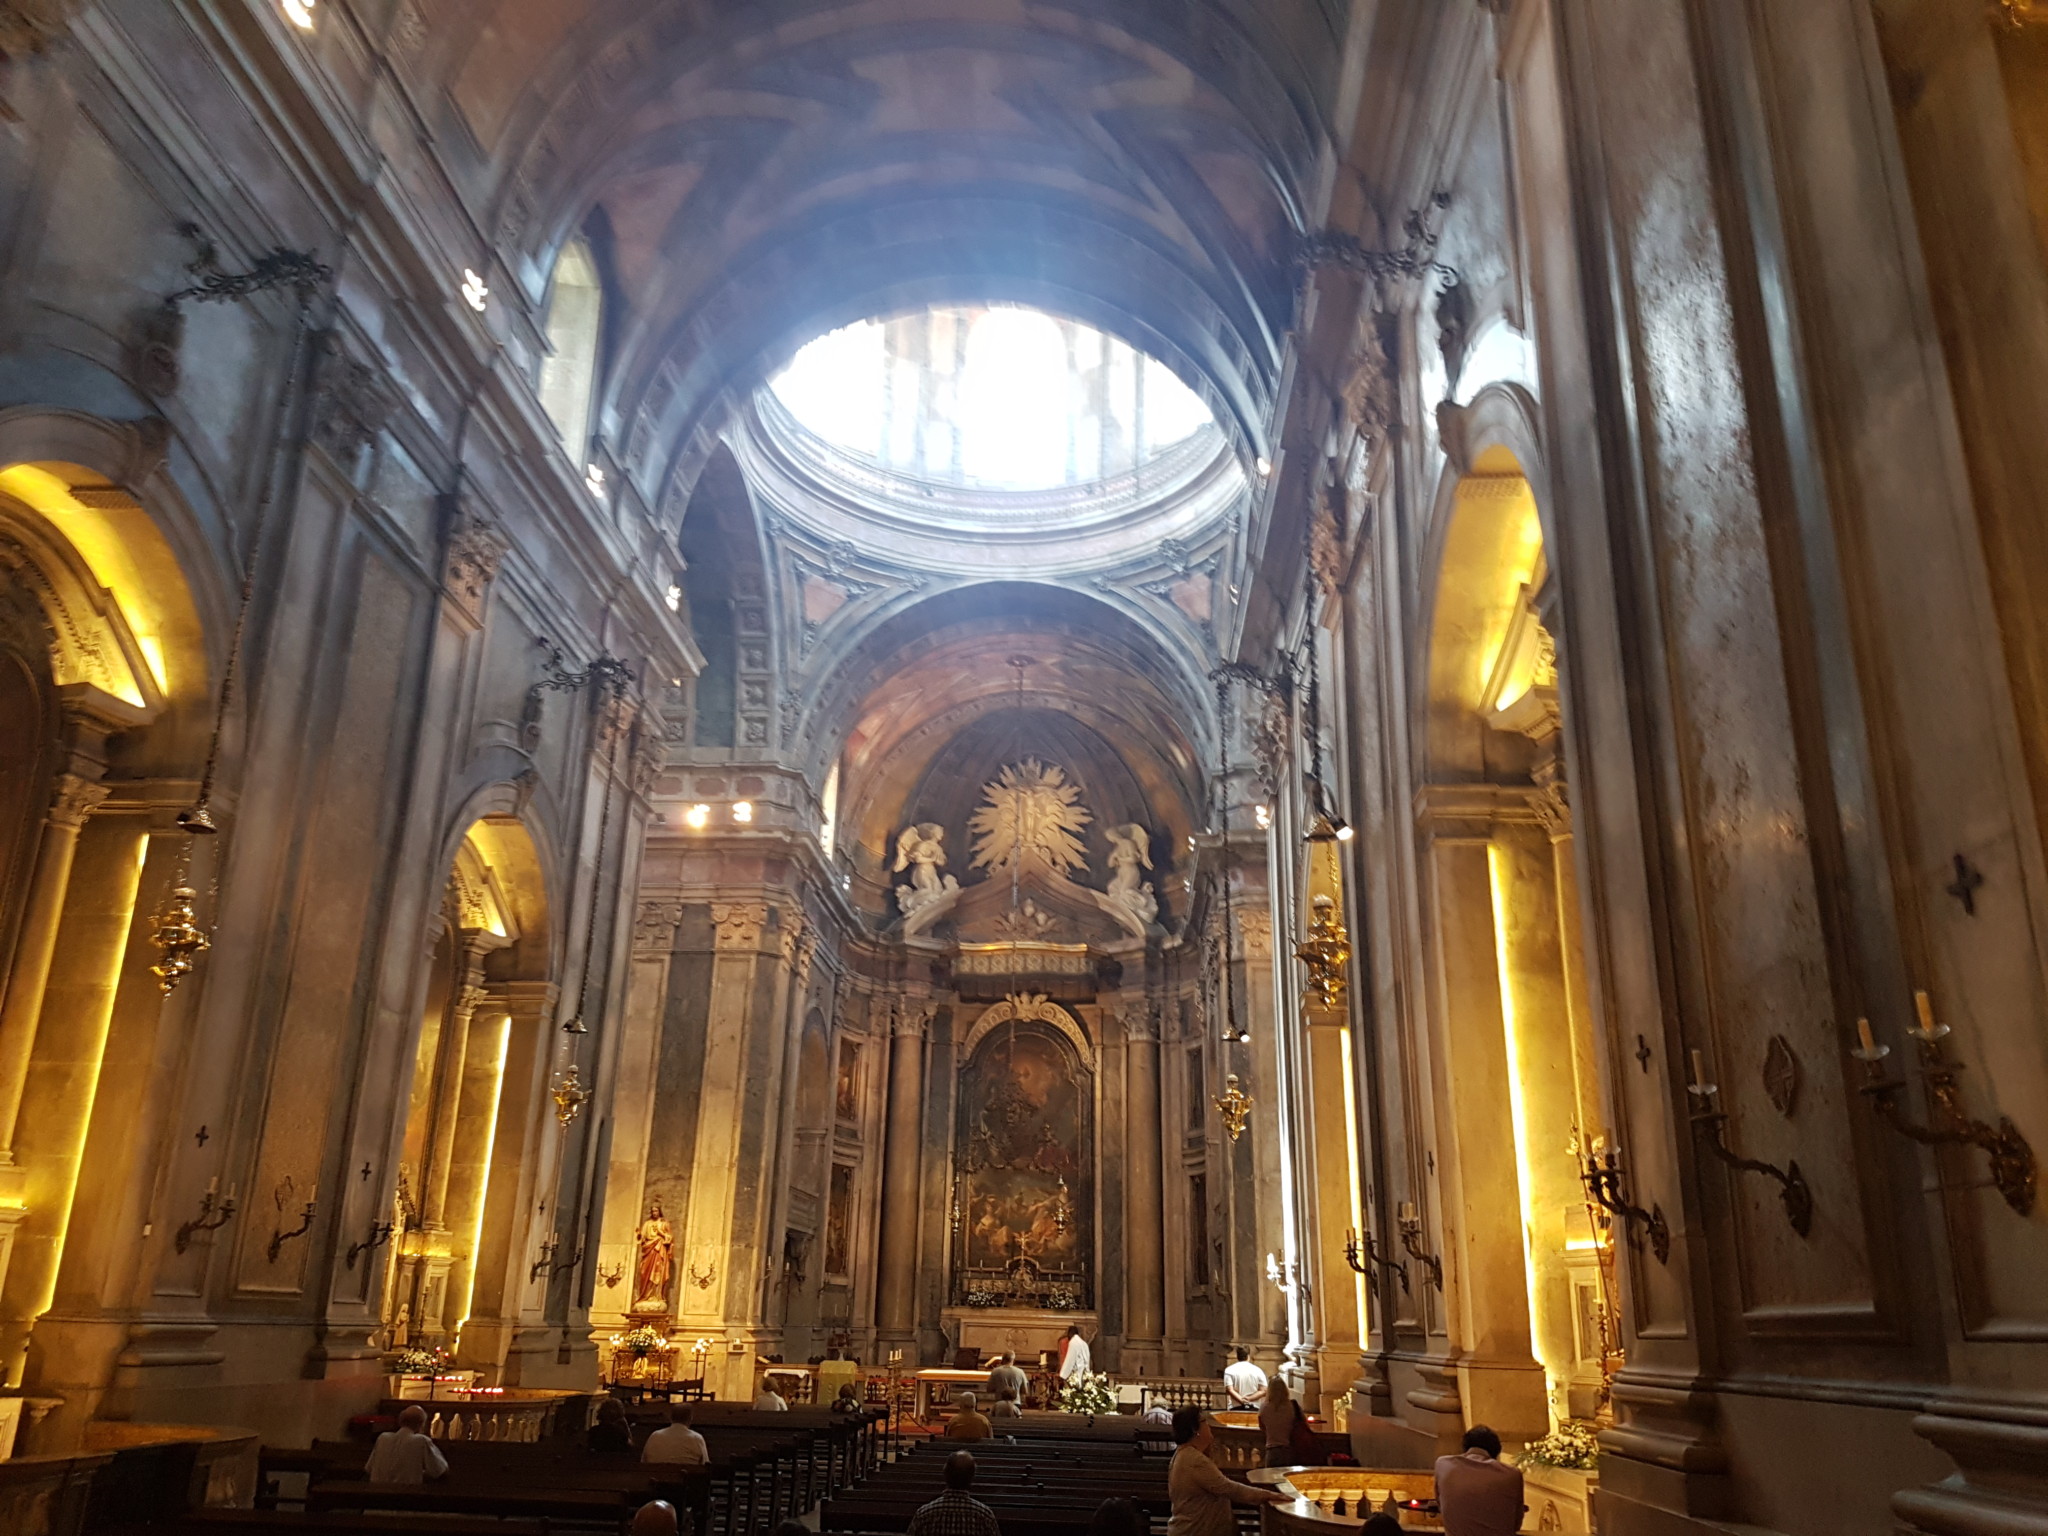 Inside the Basilica da Estrela